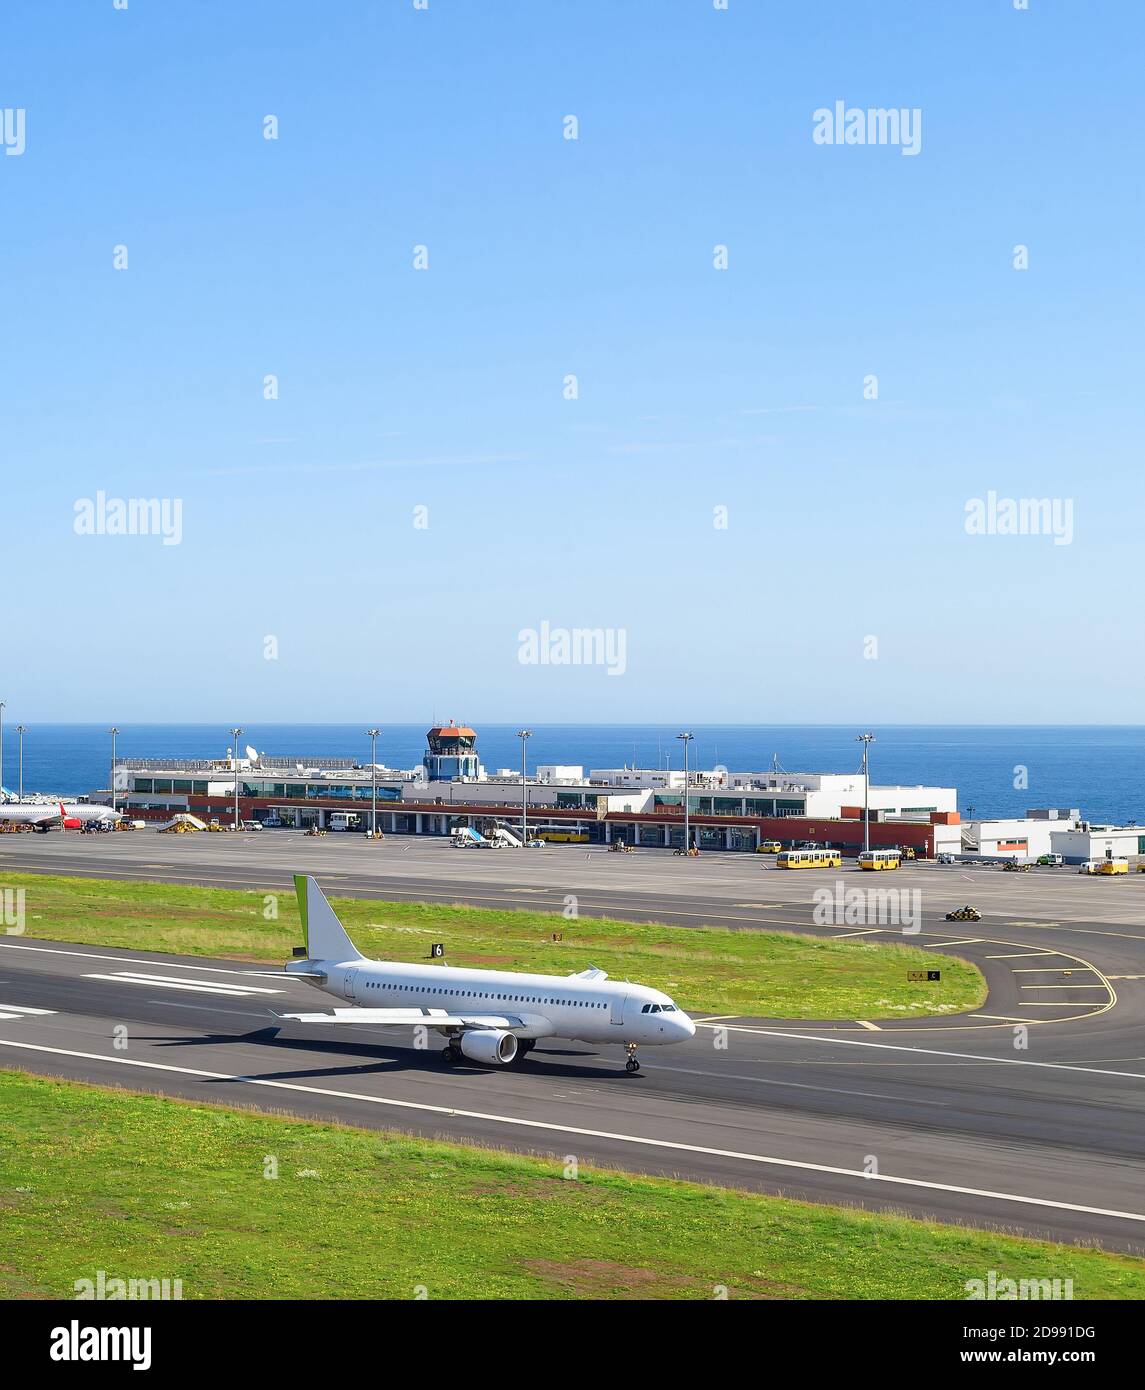 Avión en pista, terminal del aeropuerto en el fondo, paisaje marino, Madeira, Portugal Foto de stock